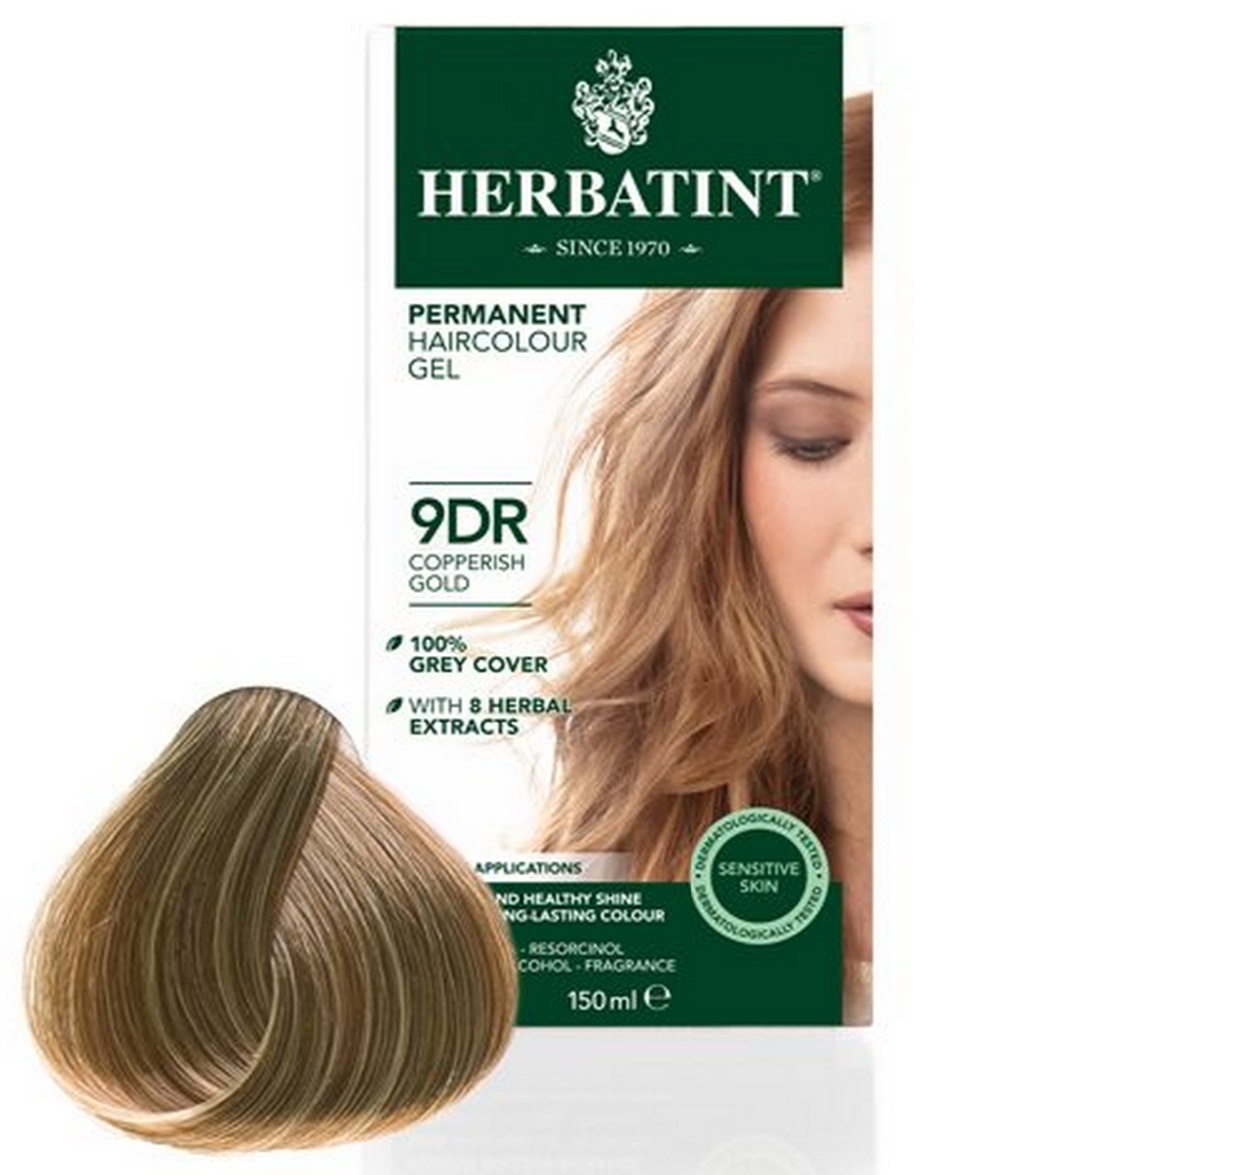 Billede af Herbatint 9DR hårfarve Copperish Gold, 150ml. hos Ren-velvaereshop.dk